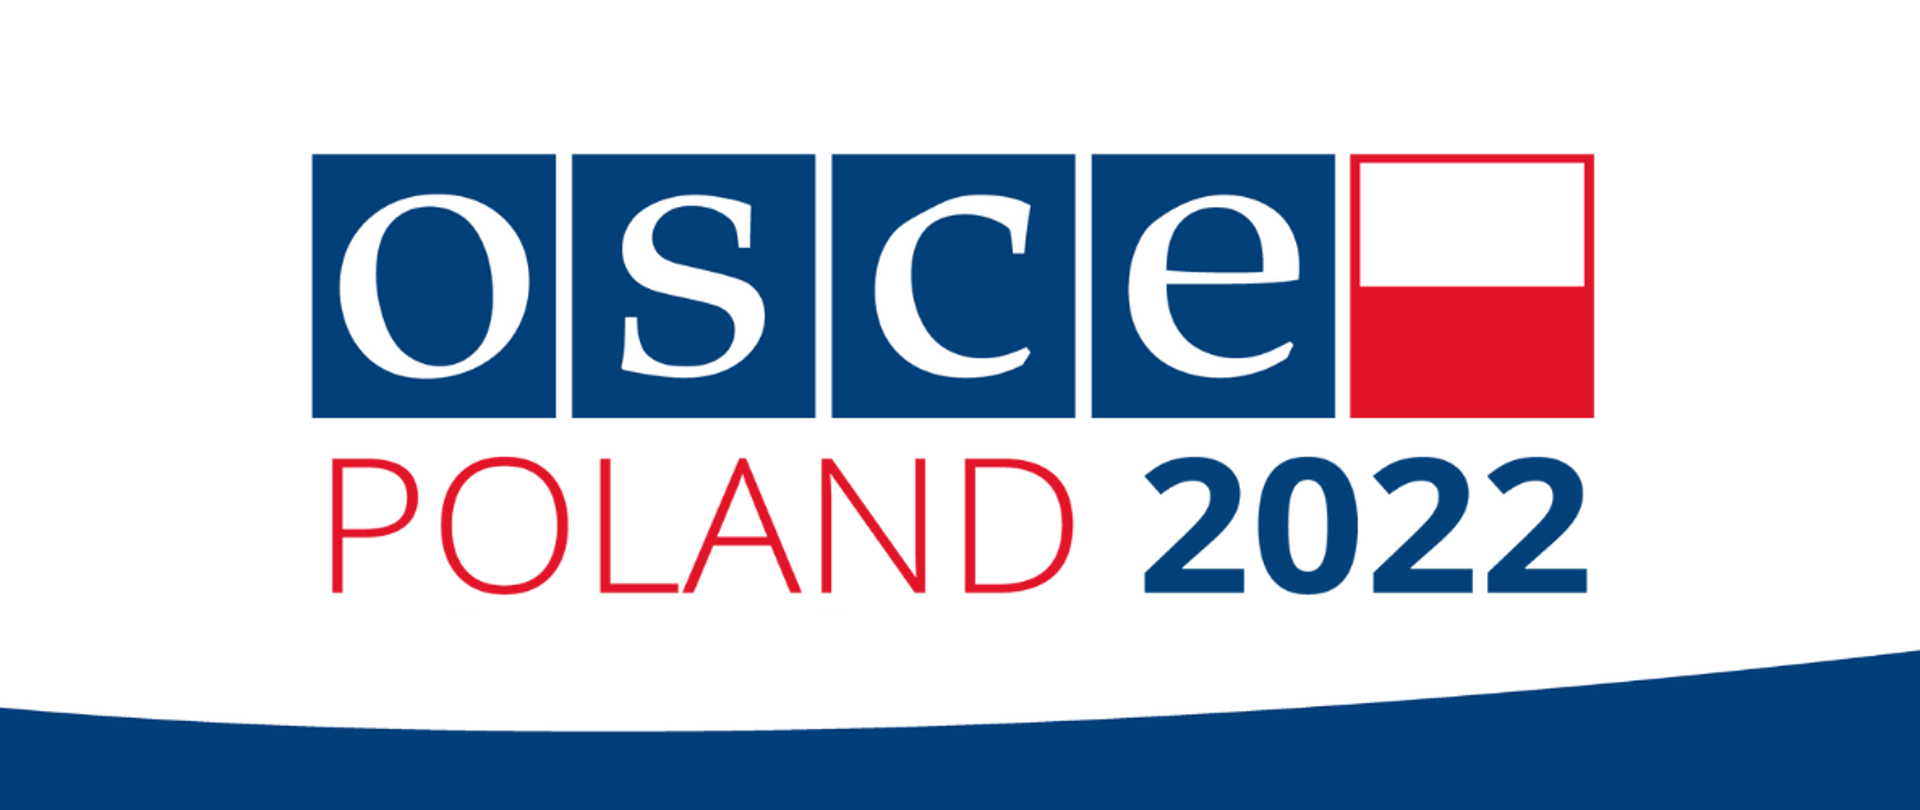 OSCE_2022_Poland